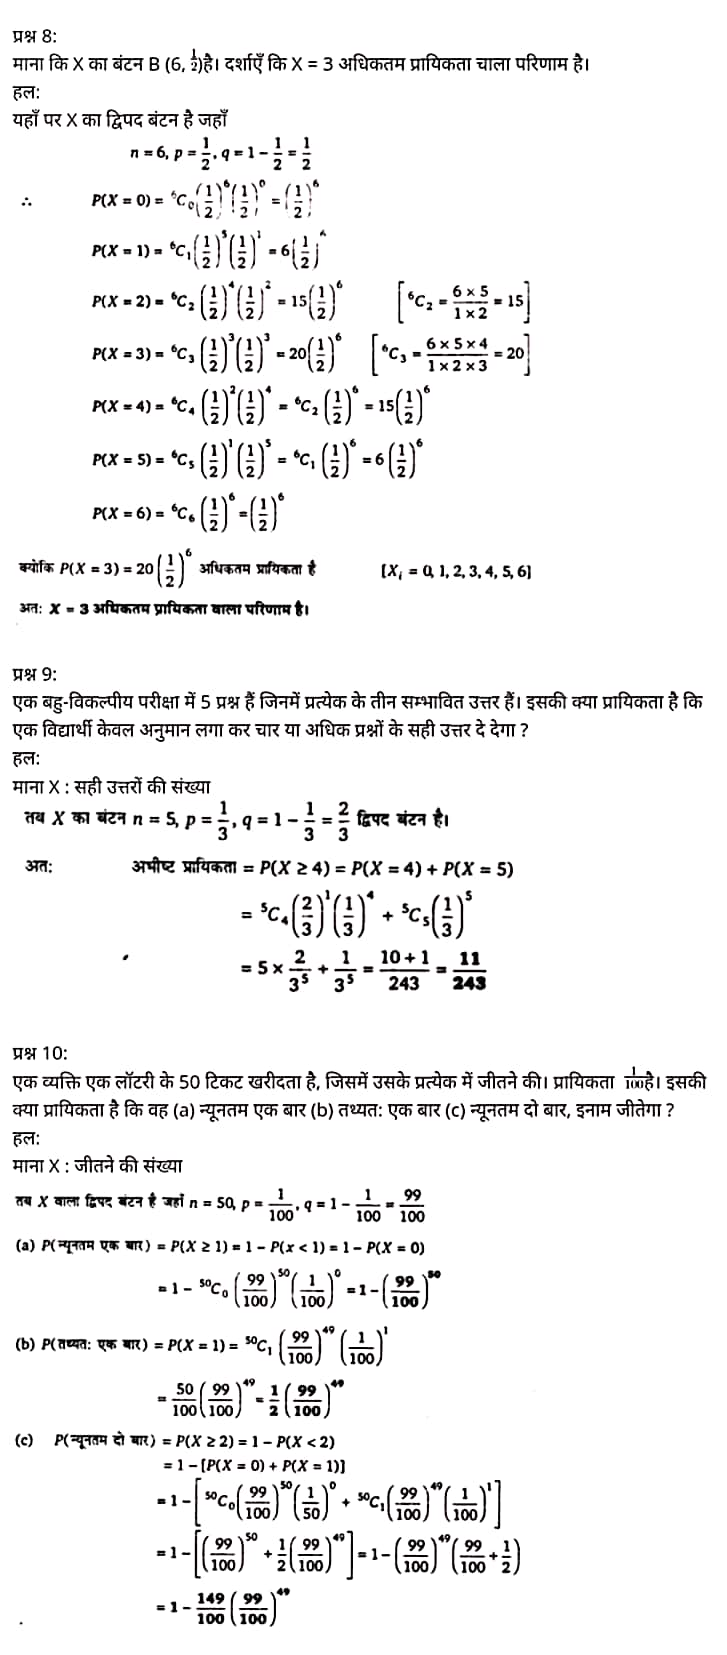 "Class 12 Maths Chapter 13", "Probability", Hindi Medium मैथ्स कक्षा 12 नोट्स pdf,  मैथ्स कक्षा 12 नोट्स 2021 NCERT,  मैथ्स कक्षा 12 PDF,  मैथ्स पुस्तक,  मैथ्स की बुक,  मैथ्स प्रश्नोत्तरी Class 12, 12 वीं मैथ्स पुस्तक RBSE,  बिहार बोर्ड 12 वीं मैथ्स नोट्स,   12th Maths book in hindi, 12th Maths notes in hindi, cbse books for class 12, cbse books in hindi, cbse ncert books, class 12 Maths notes in hindi,  class 12 hindi ncert solutions, Maths 2020, Maths 2021, Maths 2022, Maths book class 12, Maths book in hindi, Maths class 12 in hindi, Maths notes for class 12 up board in hindi, ncert all books, ncert app in hindi, ncert book solution, ncert books class 10, ncert books class 12, ncert books for class 7, ncert books for upsc in hindi, ncert books in hindi class 10, ncert books in hindi for class 12 Maths, ncert books in hindi for class 6, ncert books in hindi pdf, ncert class 12 hindi book, ncert english book, ncert Maths book in hindi, ncert Maths books in hindi pdf, ncert Maths class 12, ncert in hindi,  old ncert books in hindi, online ncert books in hindi,  up board 12th, up board 12th syllabus, up board class 10 hindi book, up board class 12 books, up board class 12 new syllabus, up Board Maths 2020, up Board Maths 2021, up Board Maths 2022, up Board Maths 2023, up board intermediate Maths syllabus, up board intermediate syllabus 2021, Up board Master 2021, up board model paper 2021, up board model paper all subject, up board new syllabus of class 12th Maths, up board paper 2021, Up board syllabus 2021, UP board syllabus 2022,  12 वीं मैथ्स पुस्तक हिंदी में, 12 वीं मैथ्स नोट्स हिंदी में, कक्षा 12 के लिए सीबीएससी पुस्तकें, हिंदी में सीबीएससी पुस्तकें, सीबीएससी  पुस्तकें, कक्षा 12 मैथ्स नोट्स हिंदी में, कक्षा 12 हिंदी एनसीईआरटी समाधान, मैथ्स 2020,